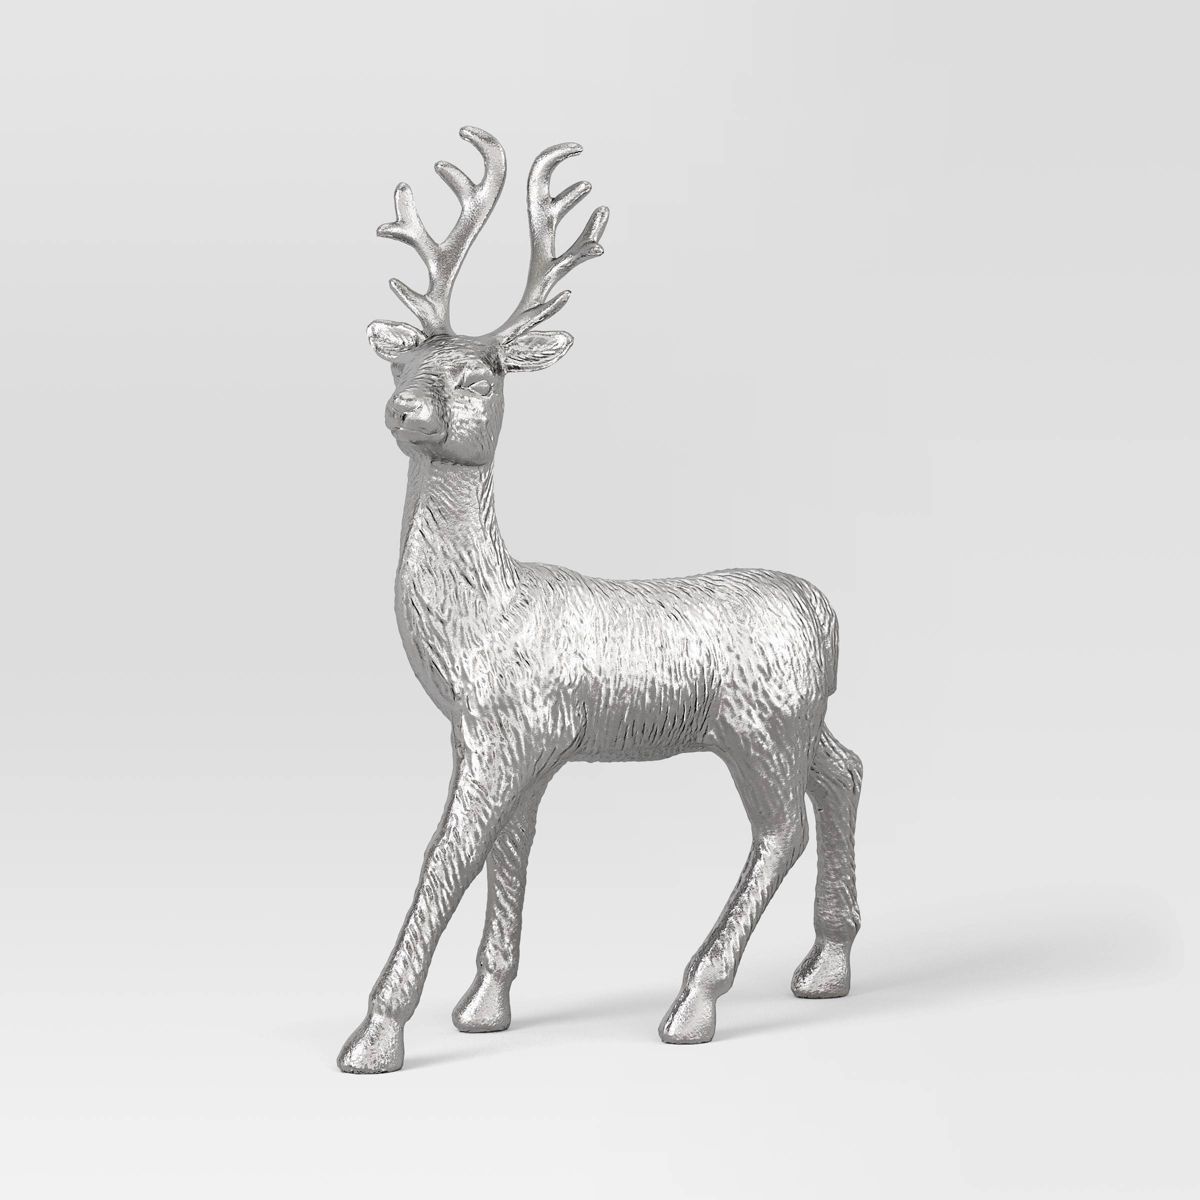 12.5" Metallic Plastic Standing Deer Animal Christmas Figurine - Wondershop™ Silver | Target